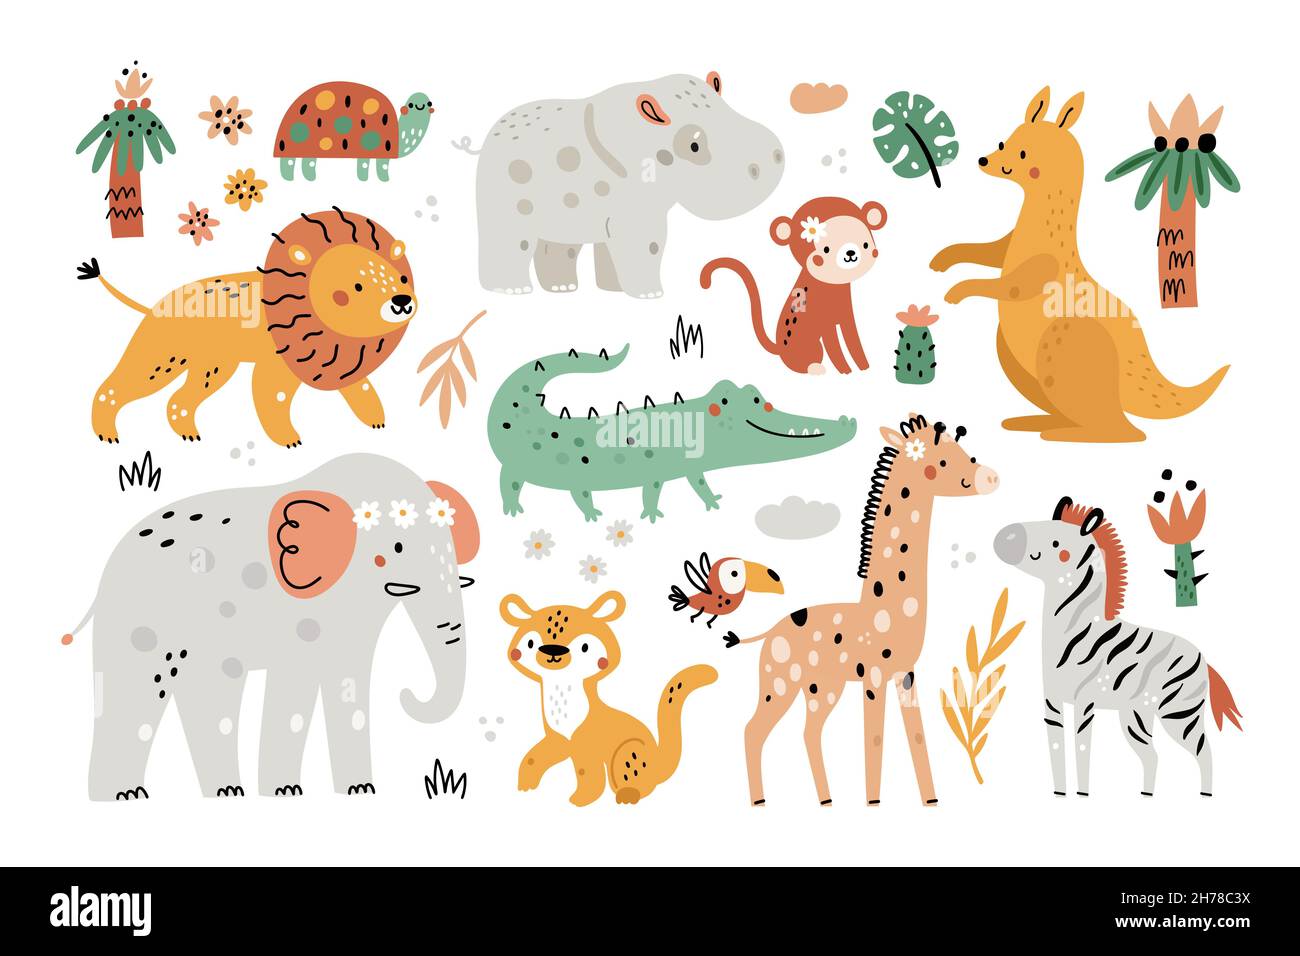 Elementos de safari lindos. Divertidos animales exóticos, plantas y hojas, niños personajes de la selva, árboles y palmeras, infantil africana sabana conjunto de fauna Ilustración del Vector